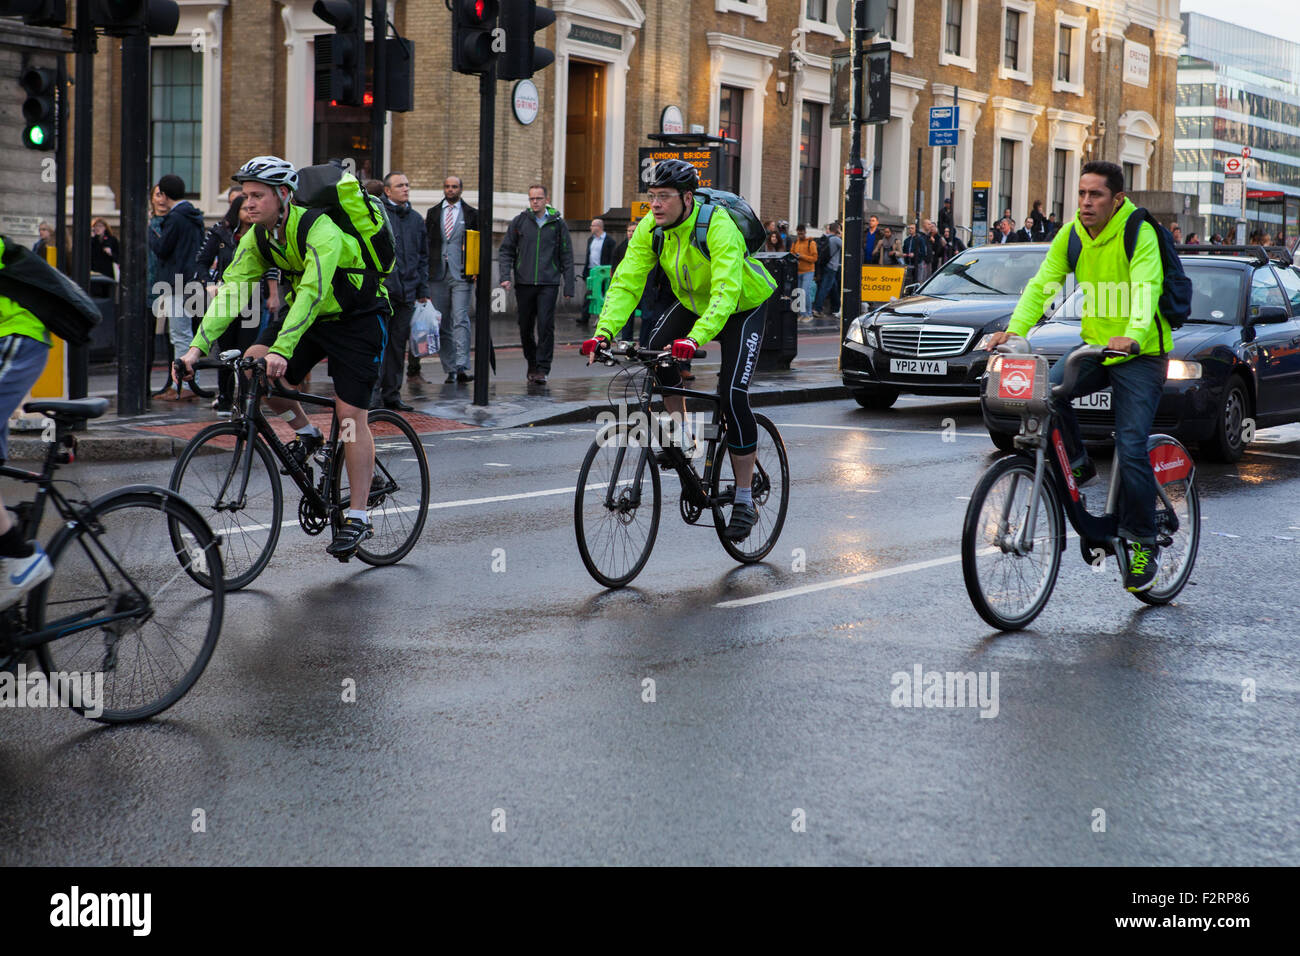 Radfahrer tragen Hochsicht Kleidung Reiten in London Stockfoto